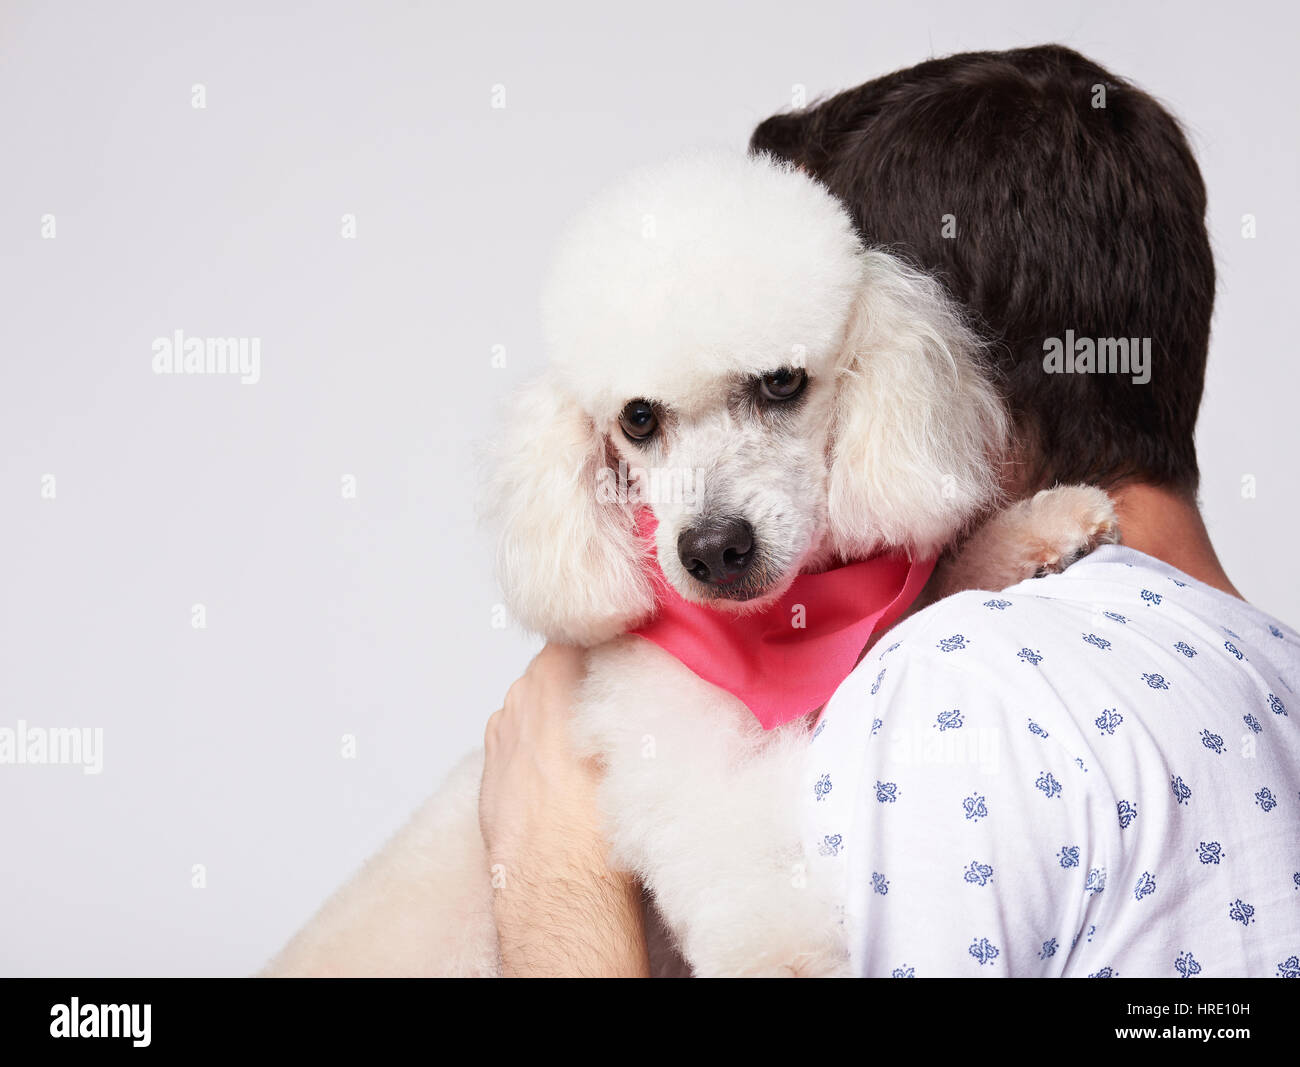 Man hug white poodle dog isolated on white background. Friendship of dog and human Stock Photo